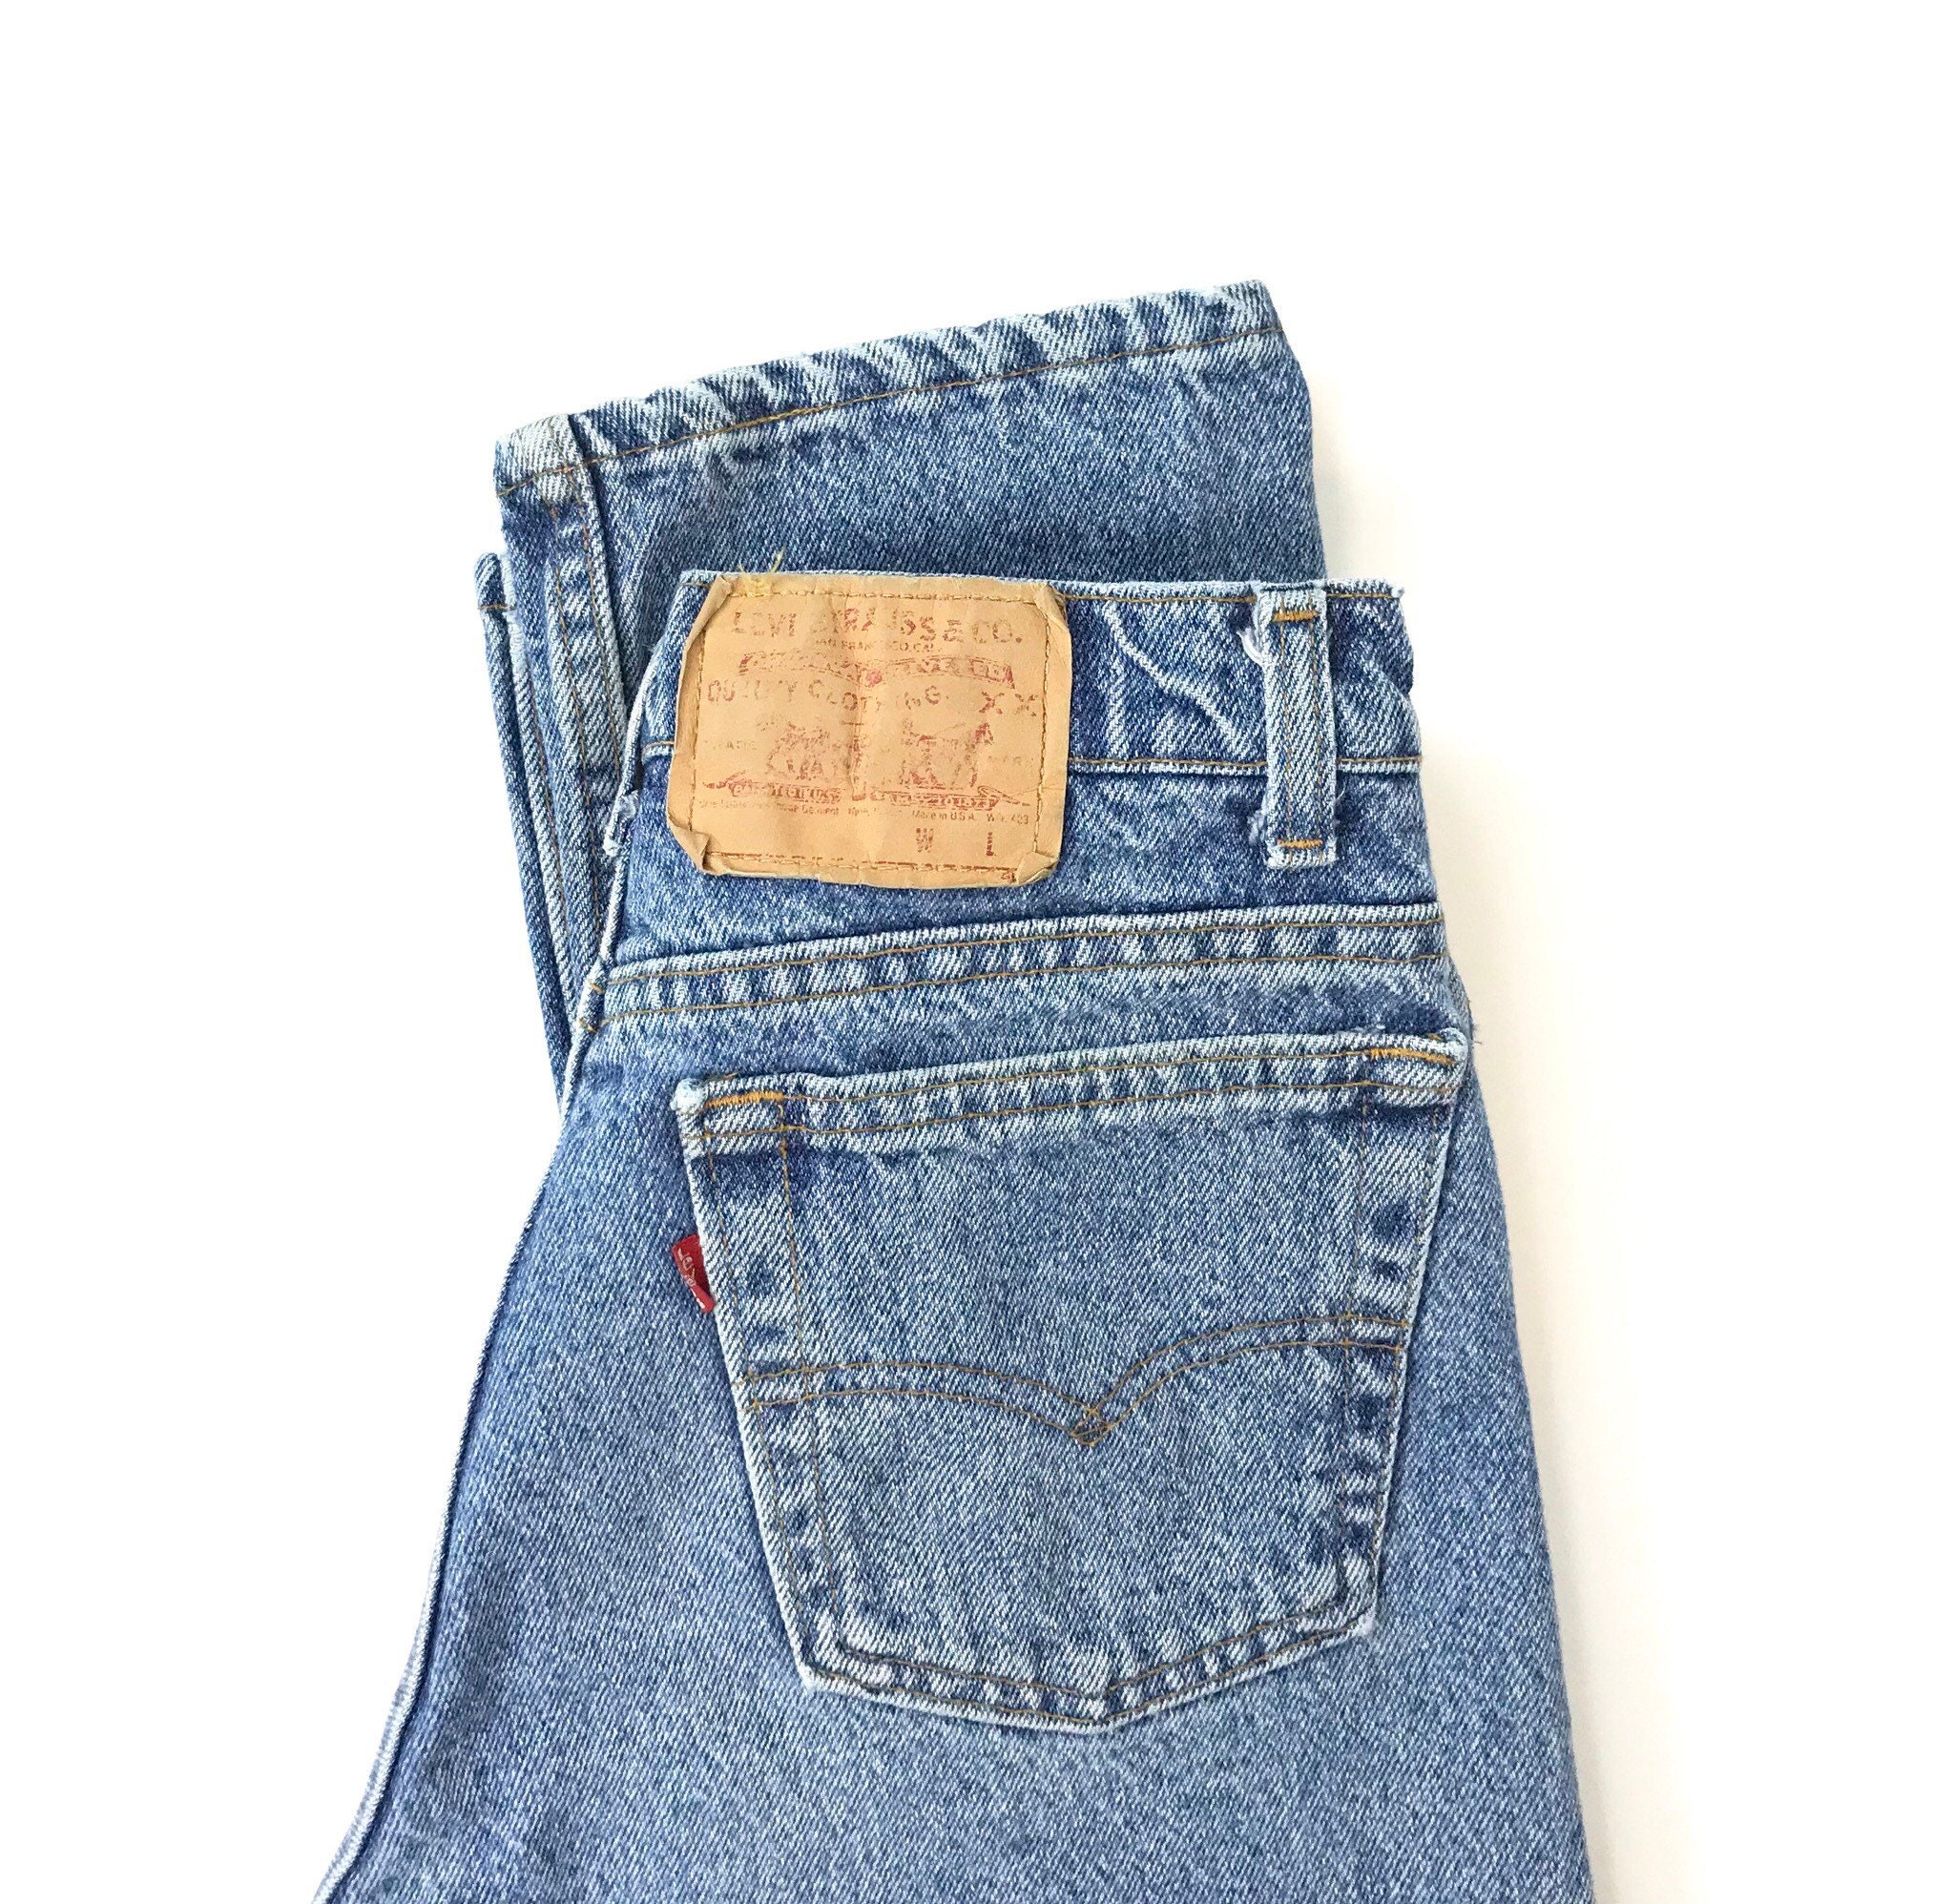 Levi's 505 Vintage Jeans / Size 25 26